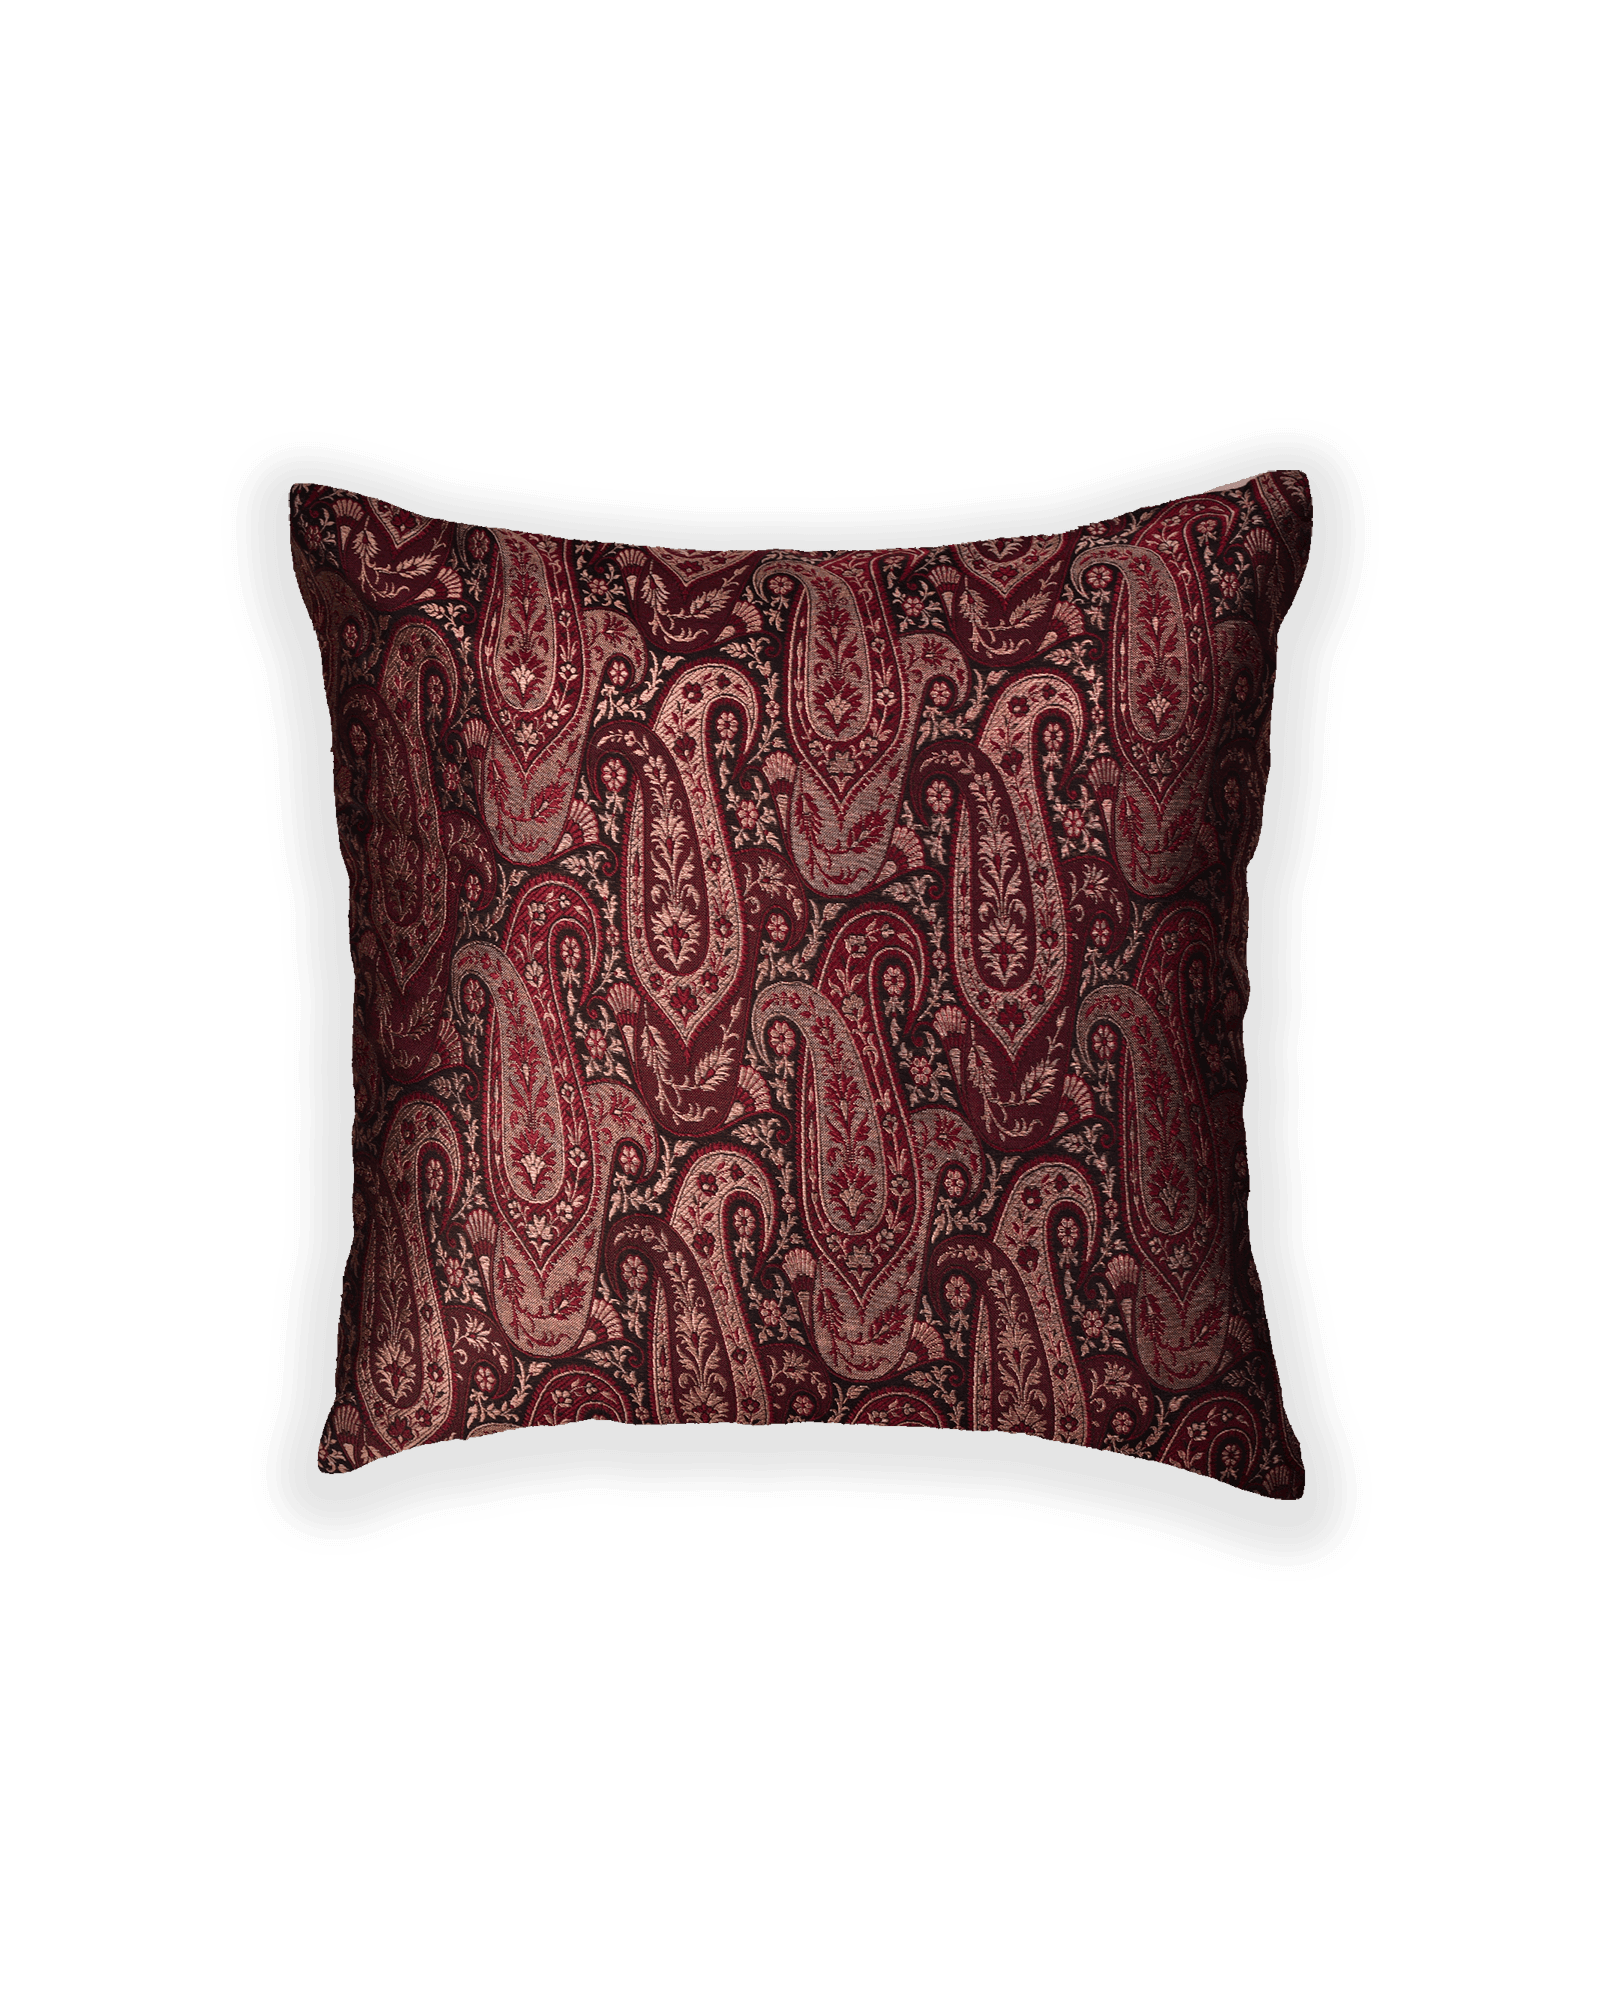 Mahogany Banarasi Brocade Poly Silk Cushion Cover 16" - By HolyWeaves, Benares